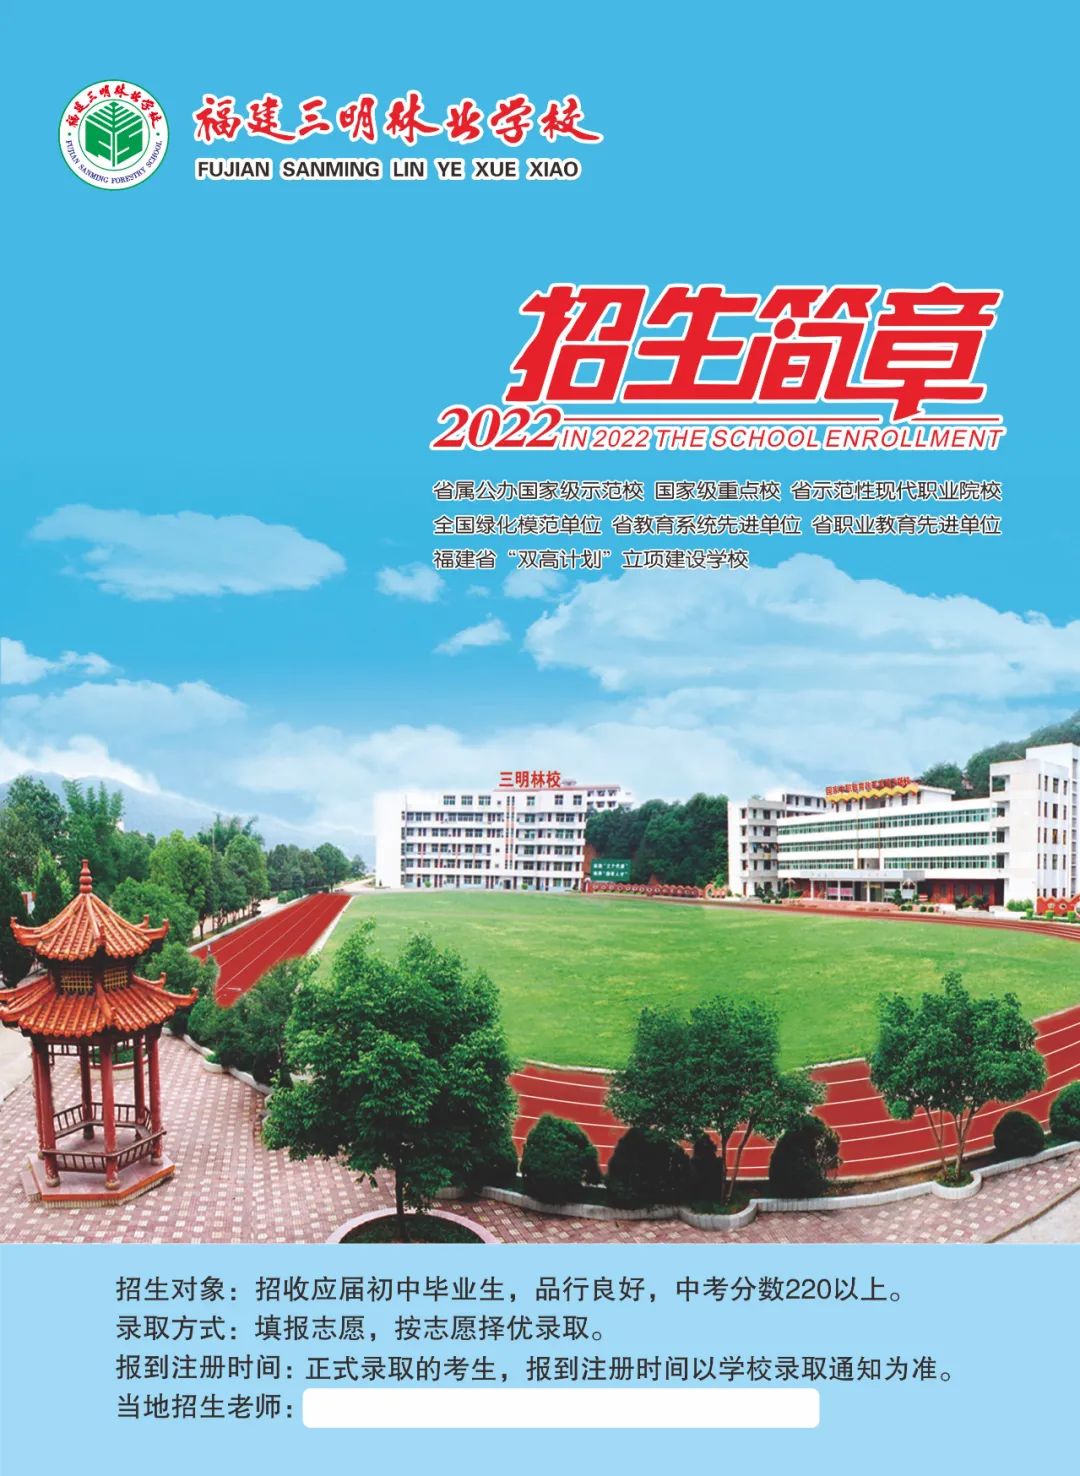 福建三明林业学校图片